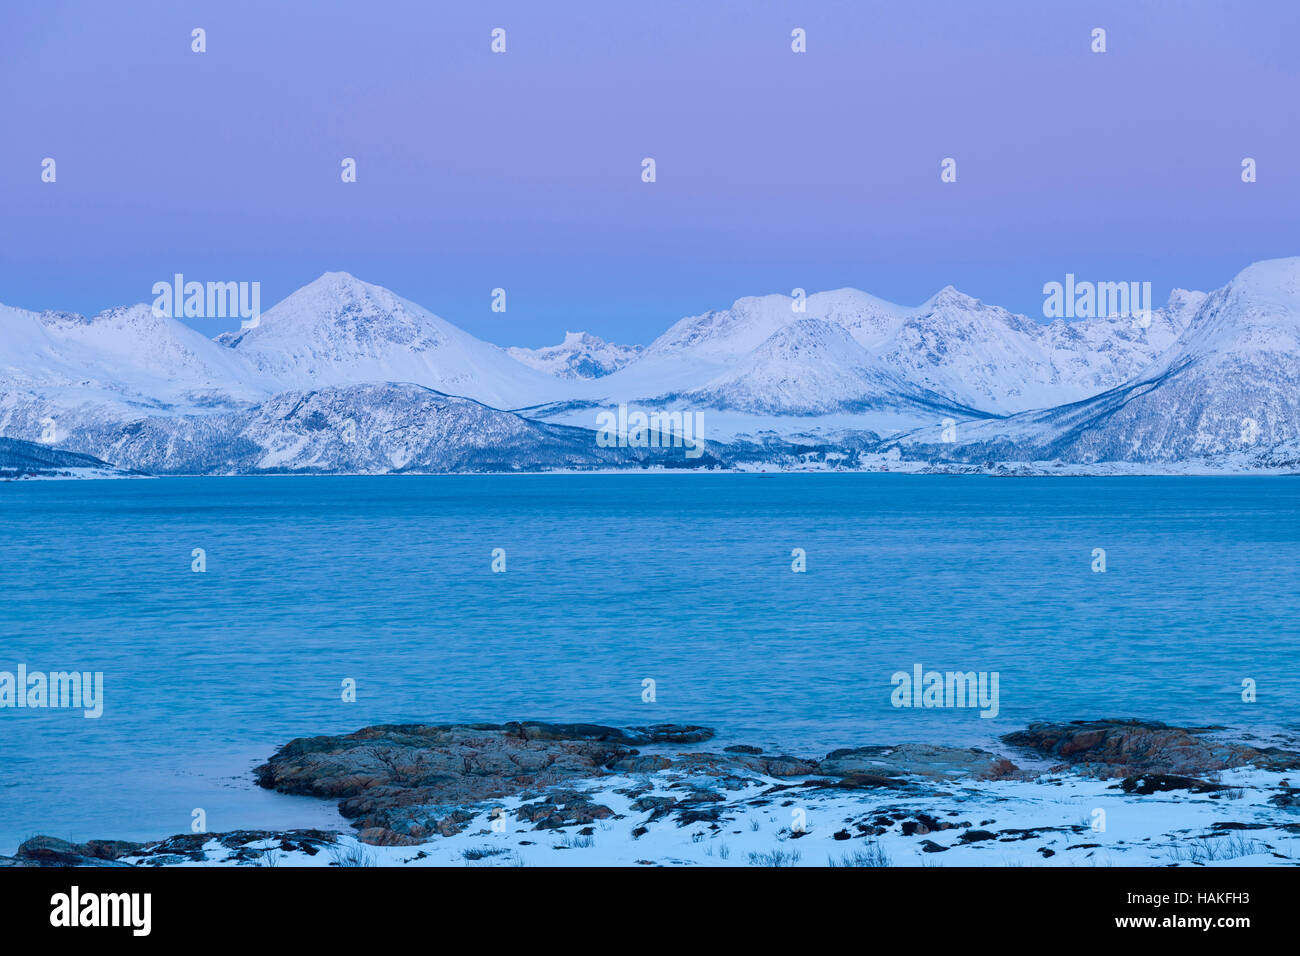 Fjord Landscape in Winter, Sandneshamnveien, Sandvika, Troms, Norway Stock Photo